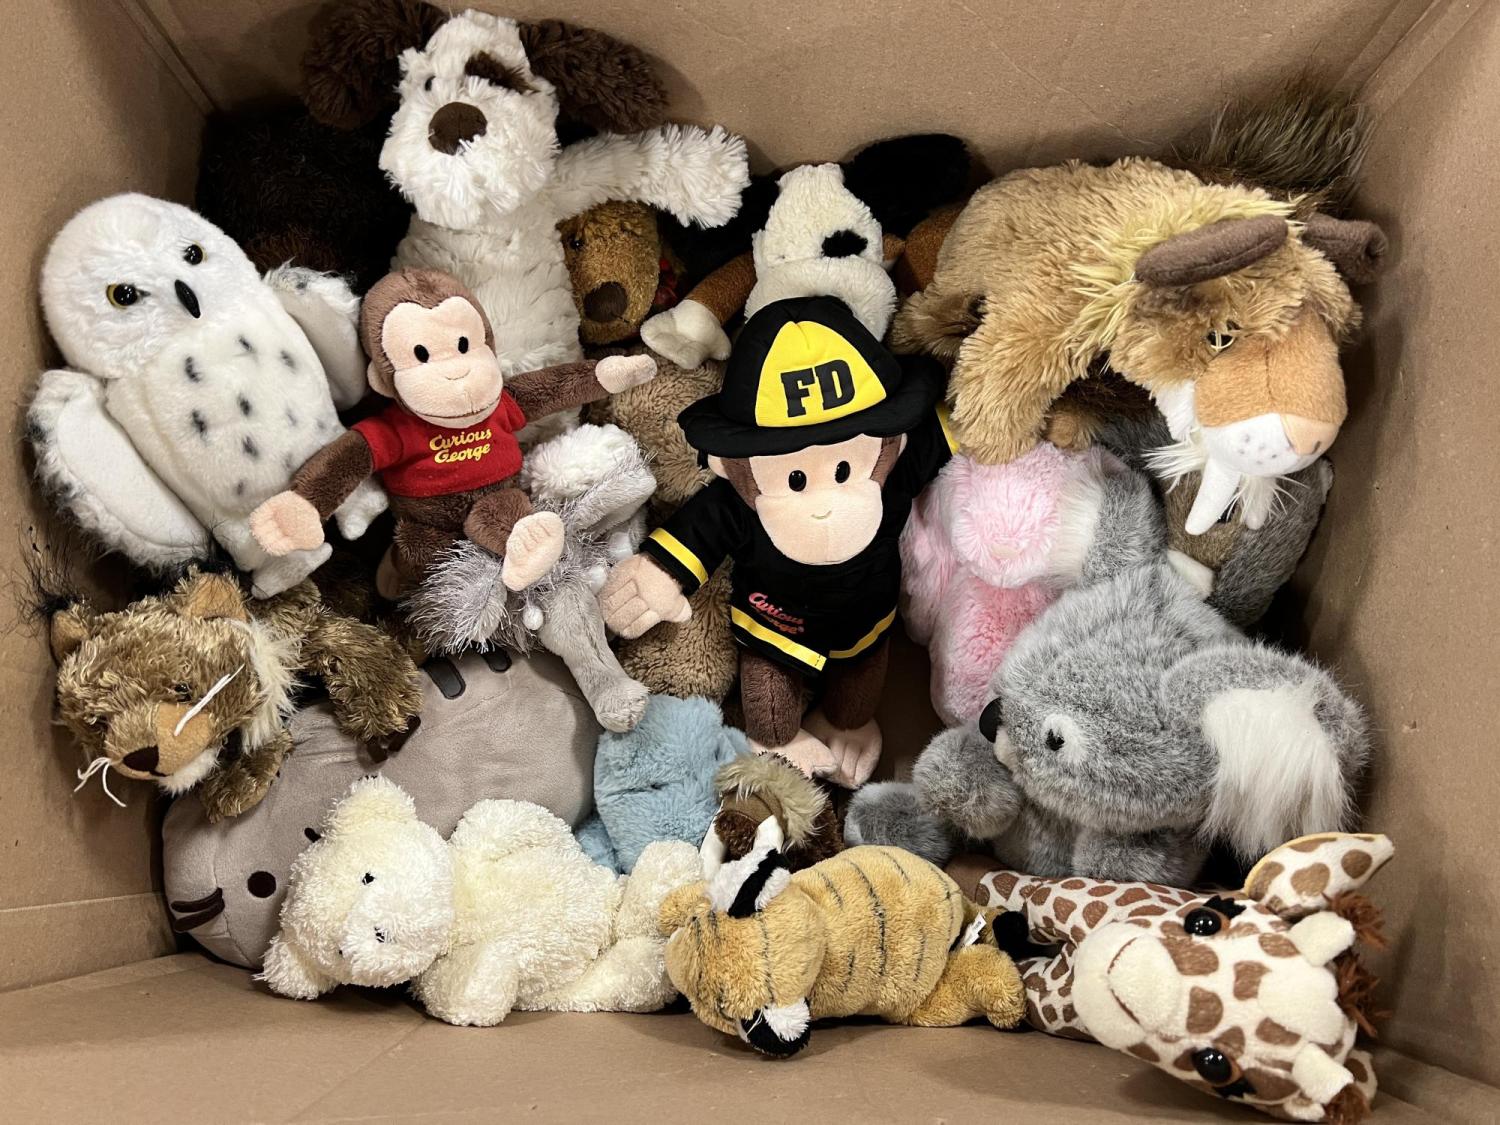 a box of stuffed animals